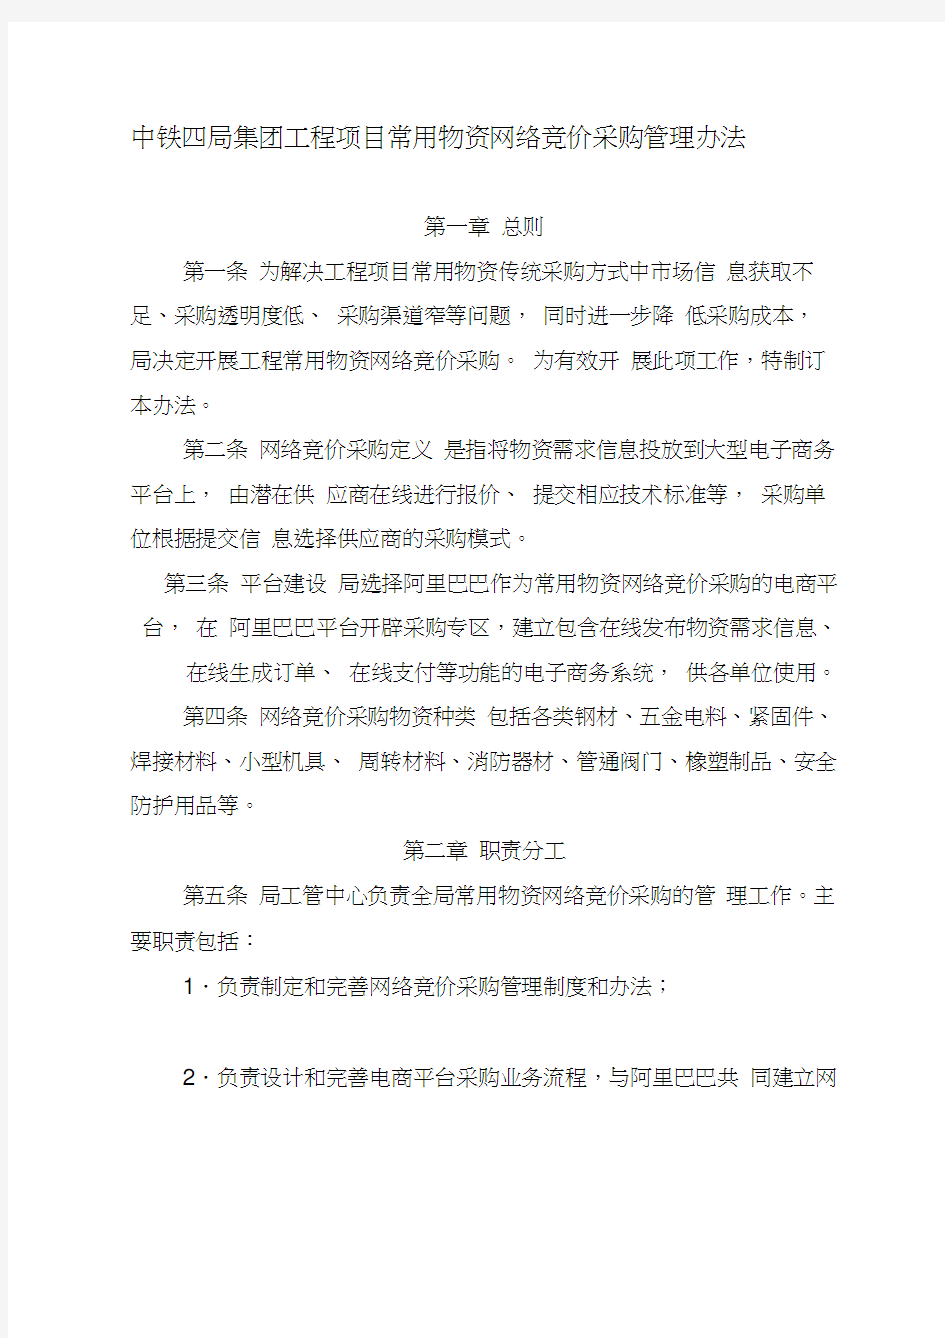 中铁四局集团工程项目常用物资网络竞价采购管理办法(20200809100316)